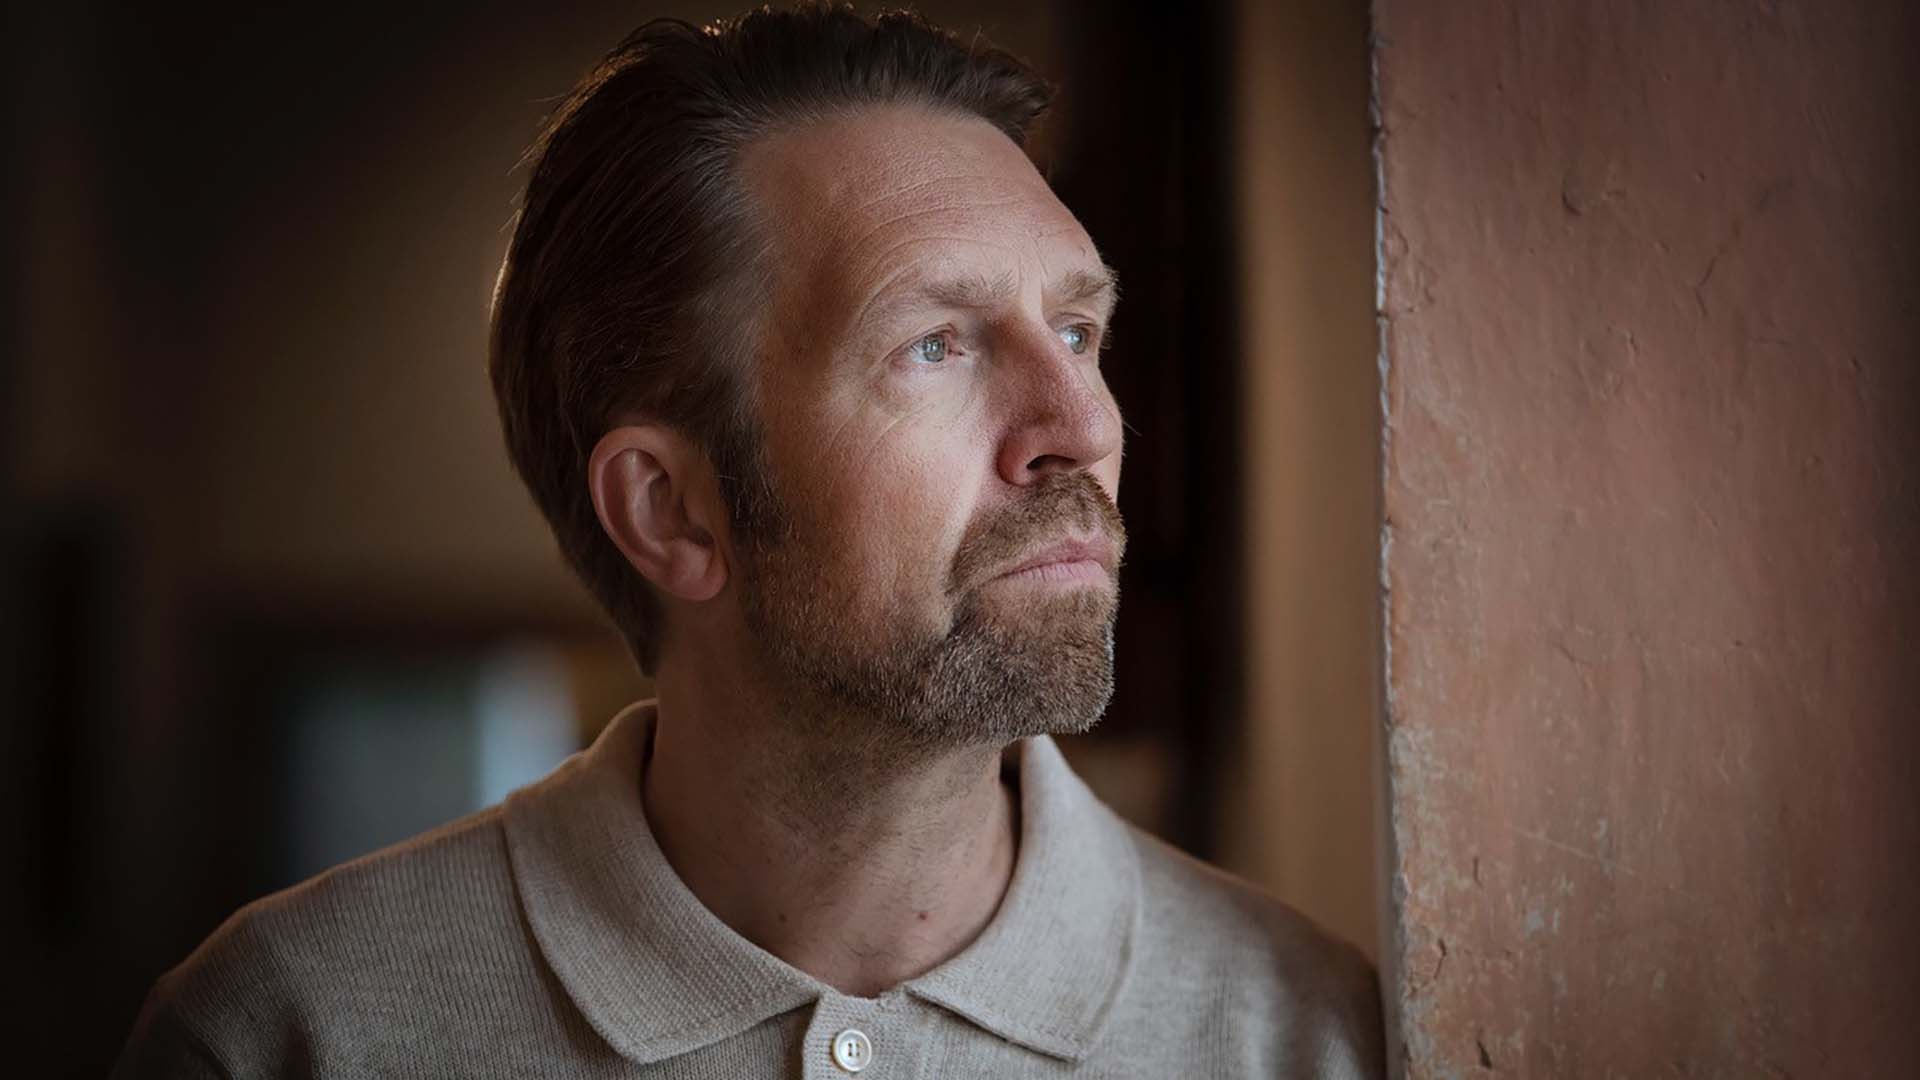 Leif Ove Andsnes portrait, photo by © Liv Øvland